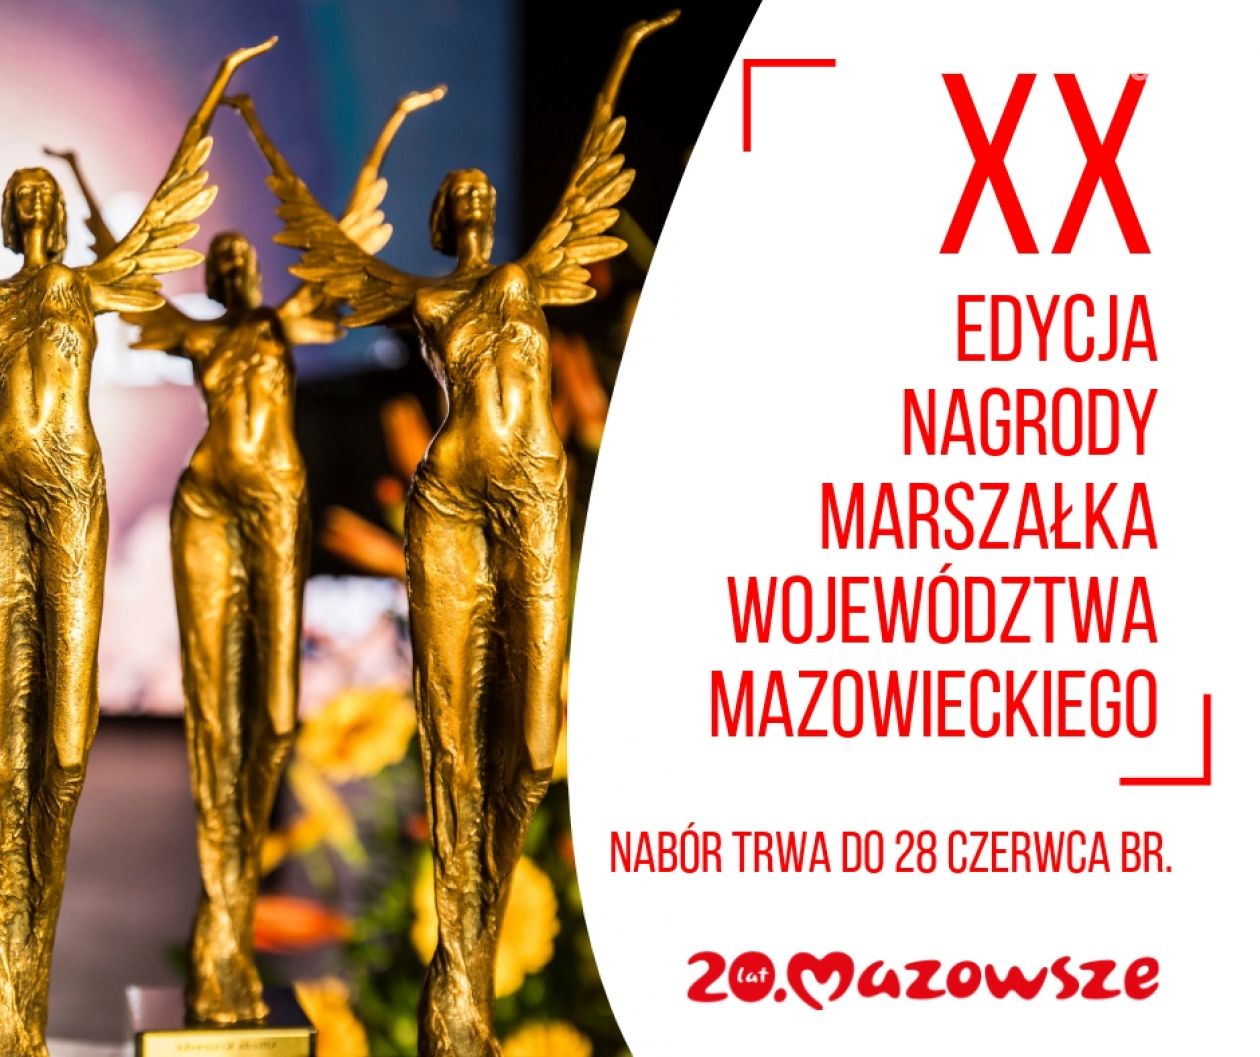 Nagroda Marszałka woj. mazowieckiego